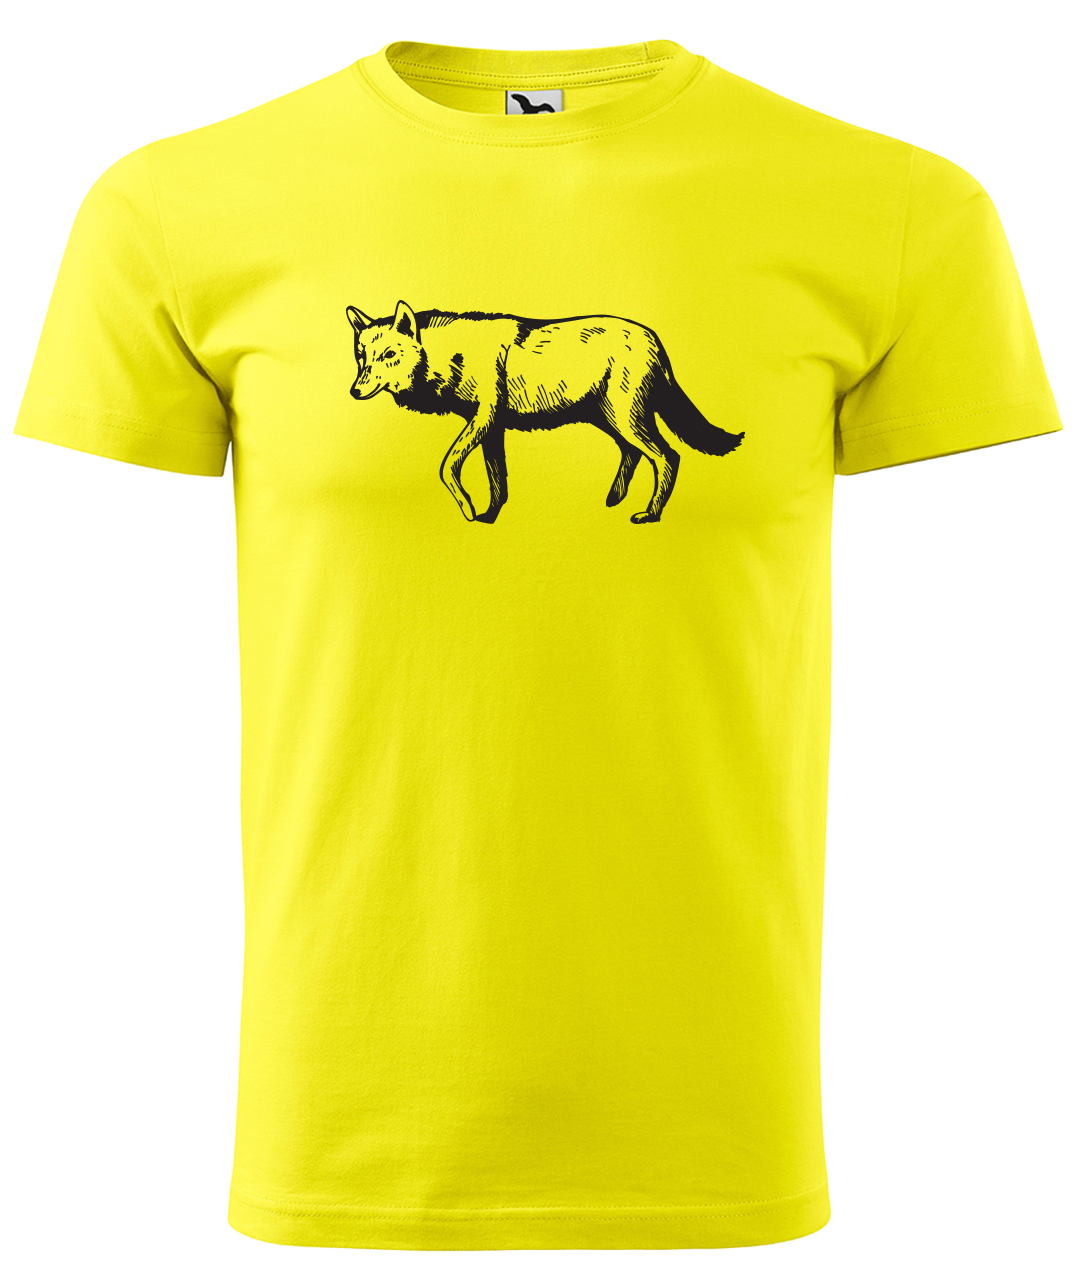 Dětské tričko s vlkem - Vlk Velikost: 4 roky / 110 cm, Barva: Žlutá (04), Délka rukávu: Krátký rukáv